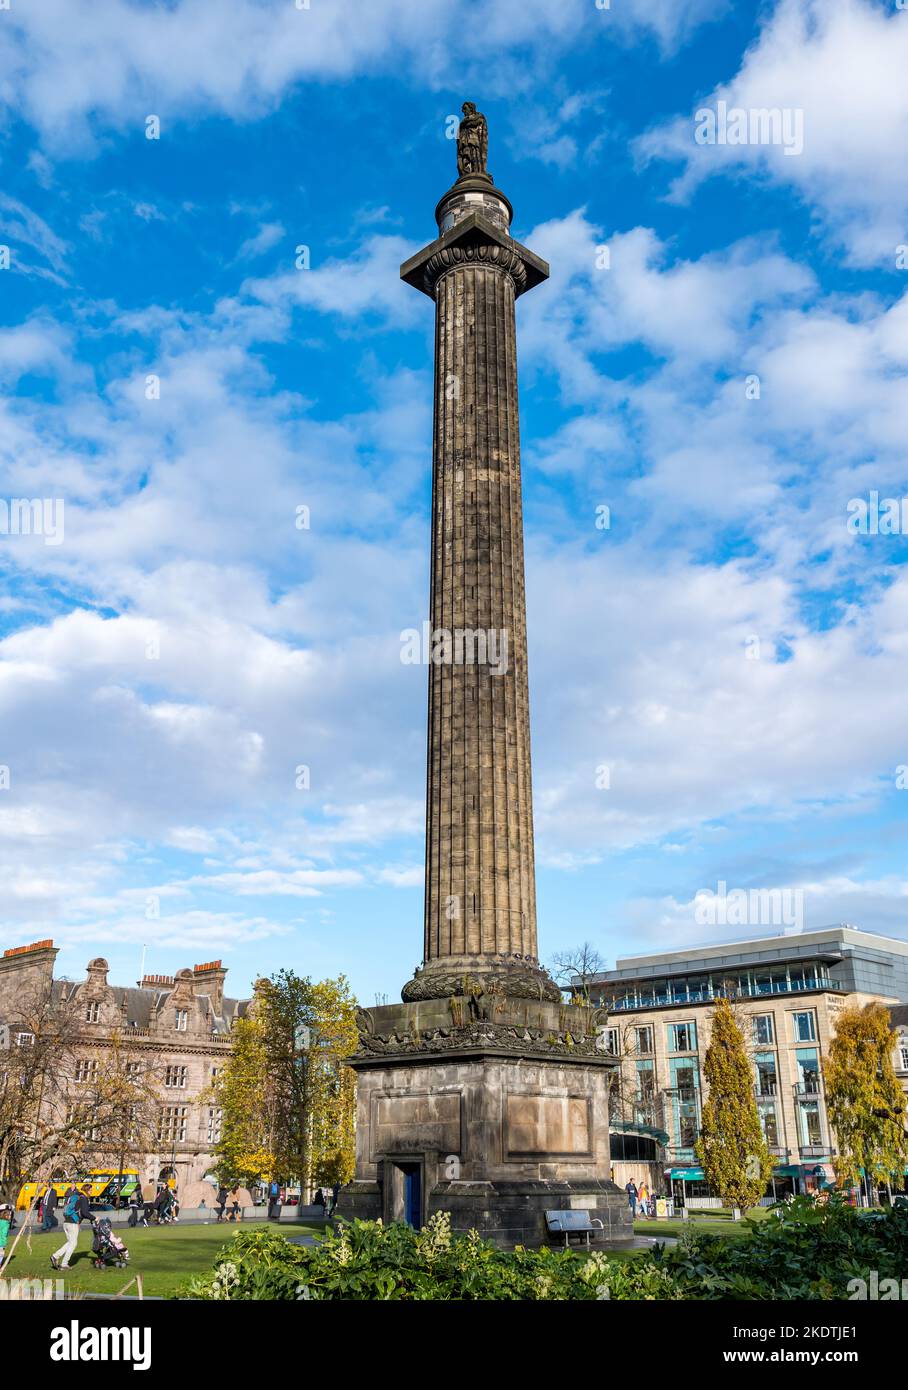 Monument Henry Dundas ou Melville sur une colonne haute contre le ciel bleu, place St Andrew, Édimbourg, Écosse, Royaume-Uni Banque D'Images